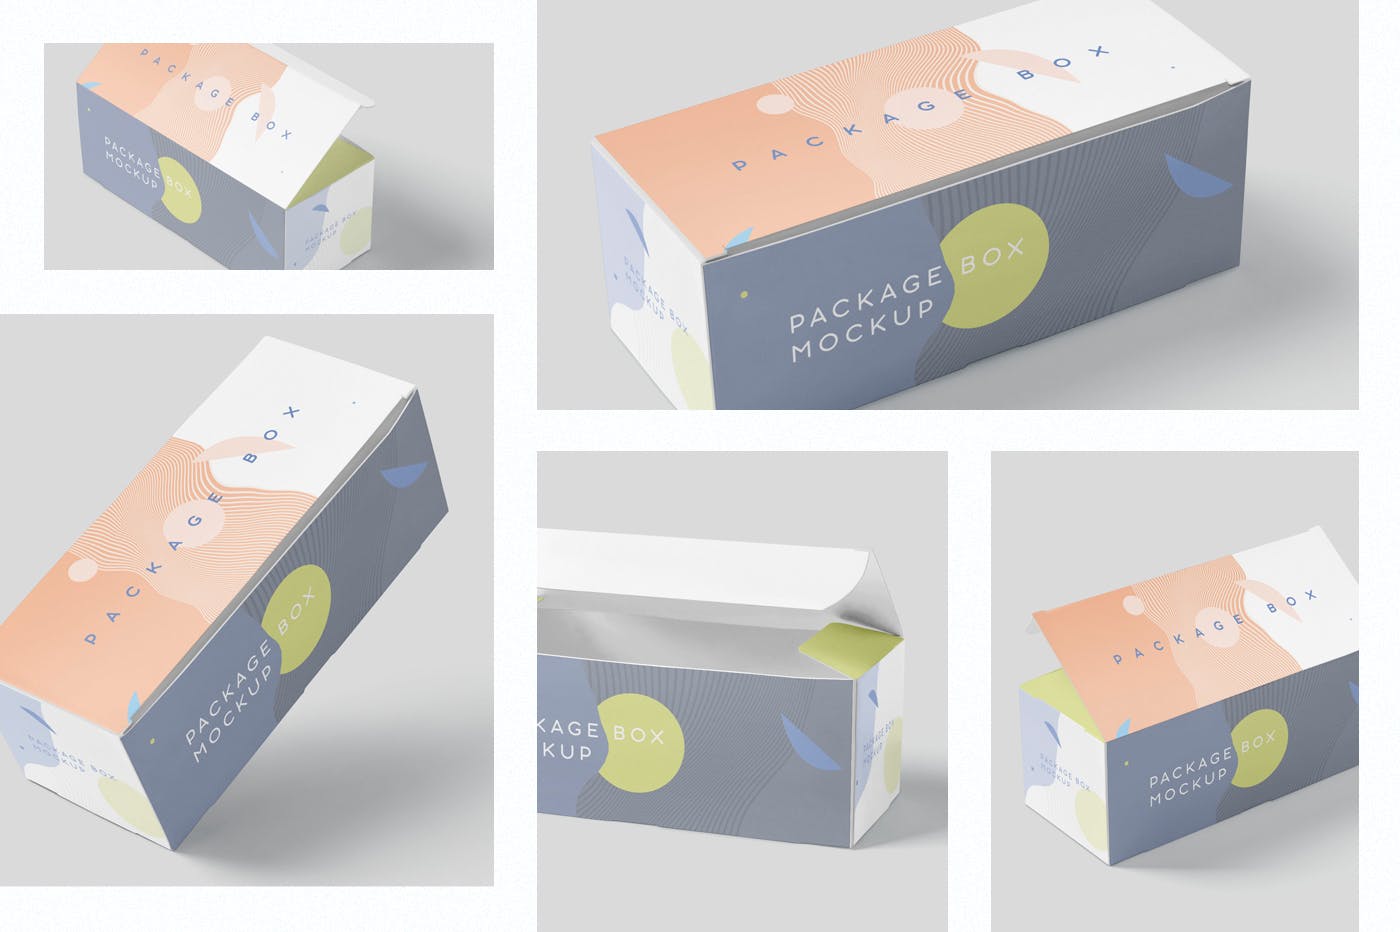 宽矩形包装盒外观设计效果图素材中国精选 Package Box Mock-Up Set – Wide Rectangle插图(1)